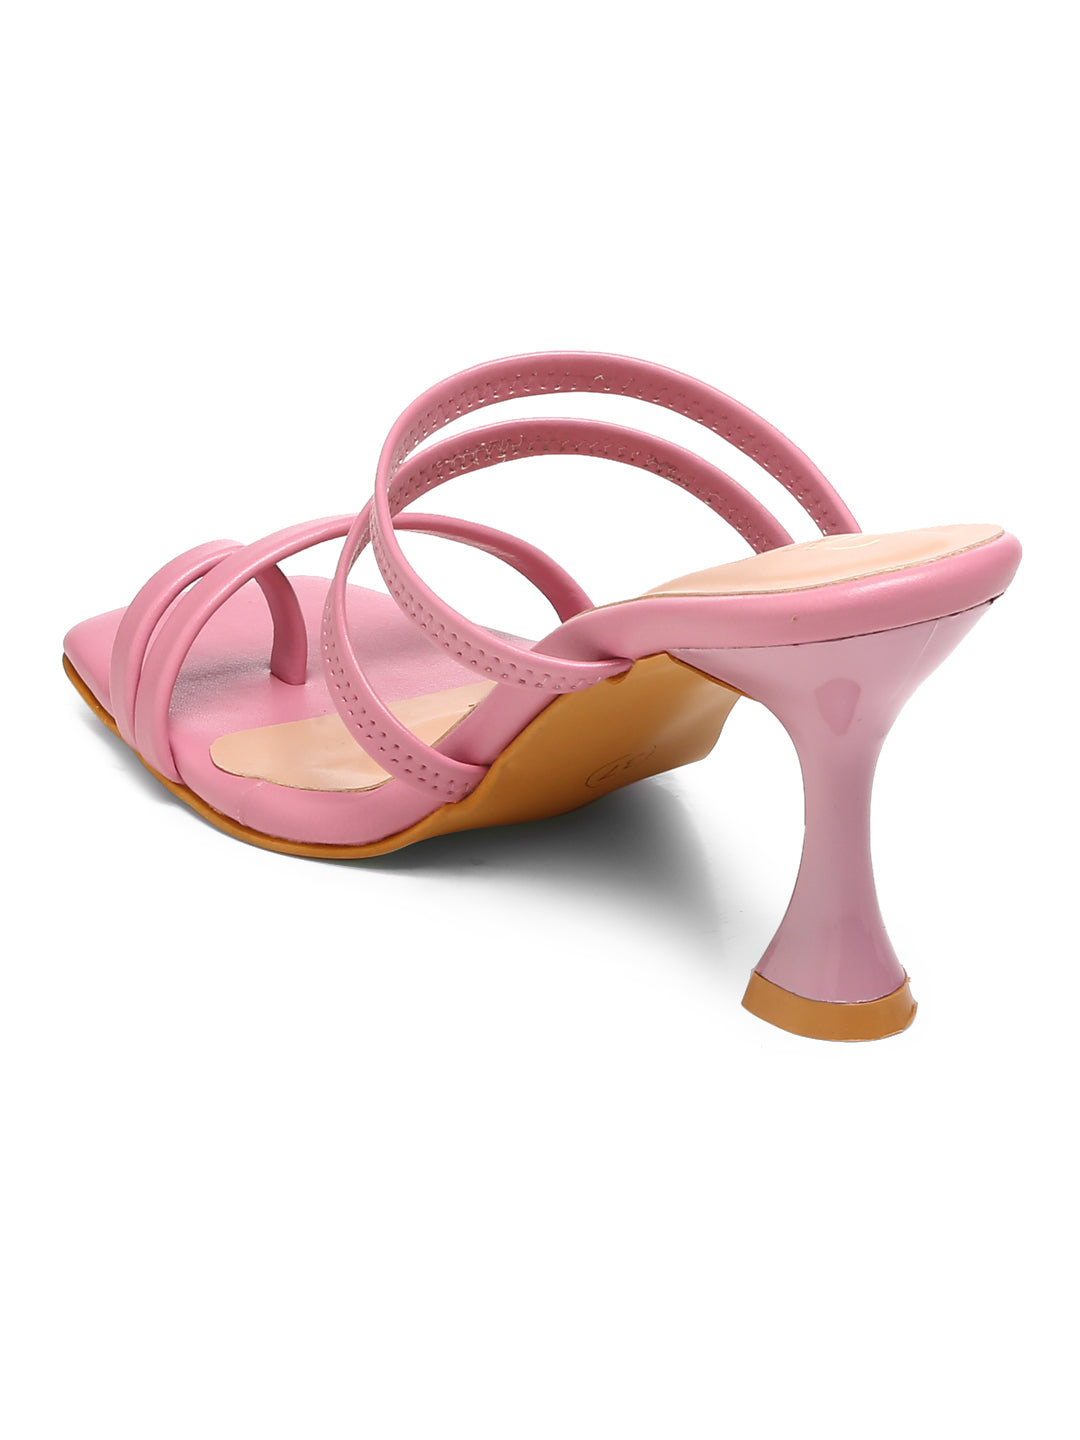 GNIST Pink Multi Strap Stilettos Heel